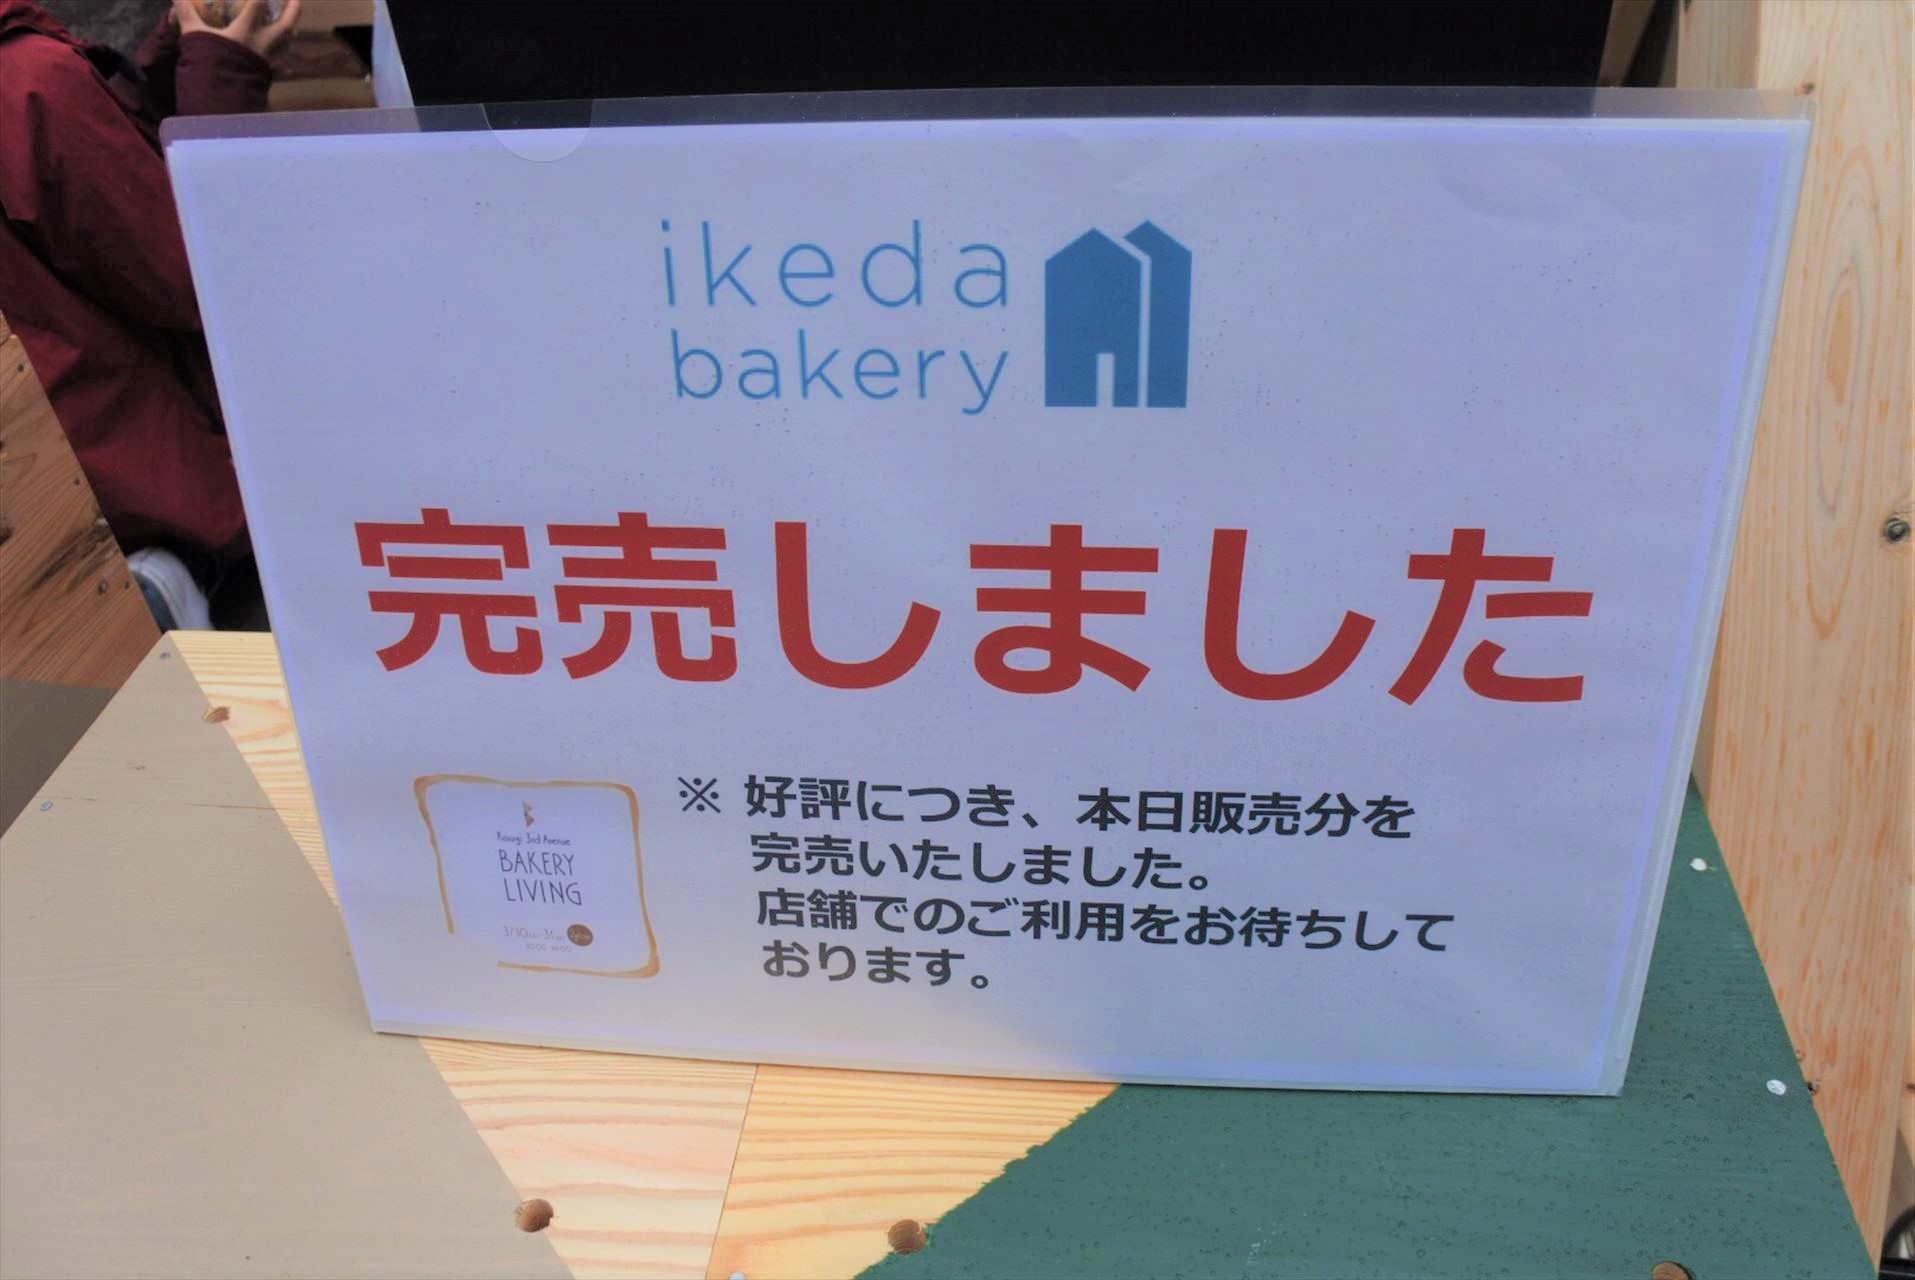 ikeda bakery